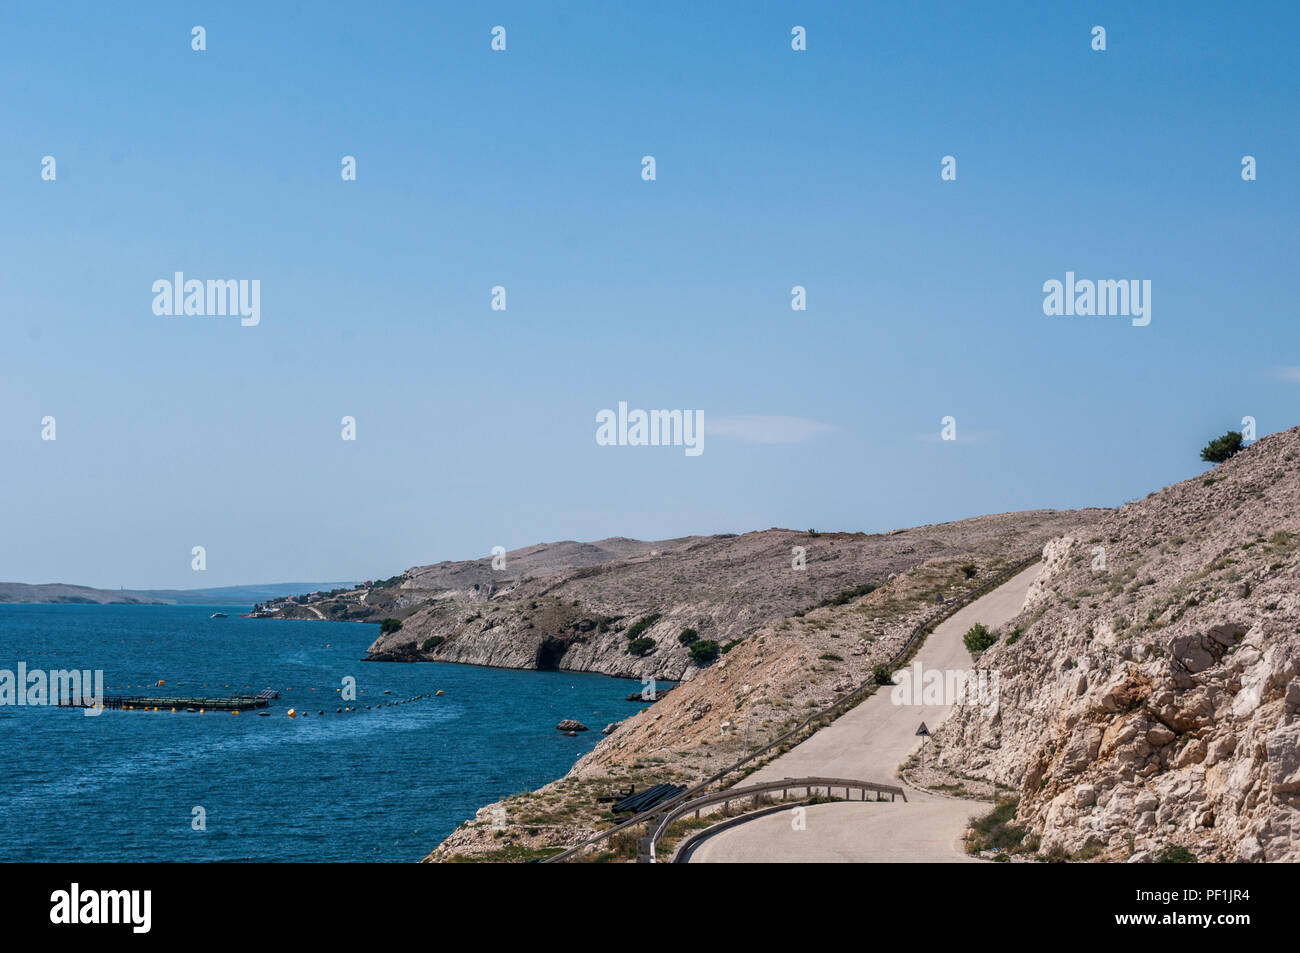 Croazia, Europa: una tortuosa strada giù per il beach sull'isola di Pag, la quinta più grande isola della costa croata del Mare Adriatico settentrionale Foto Stock